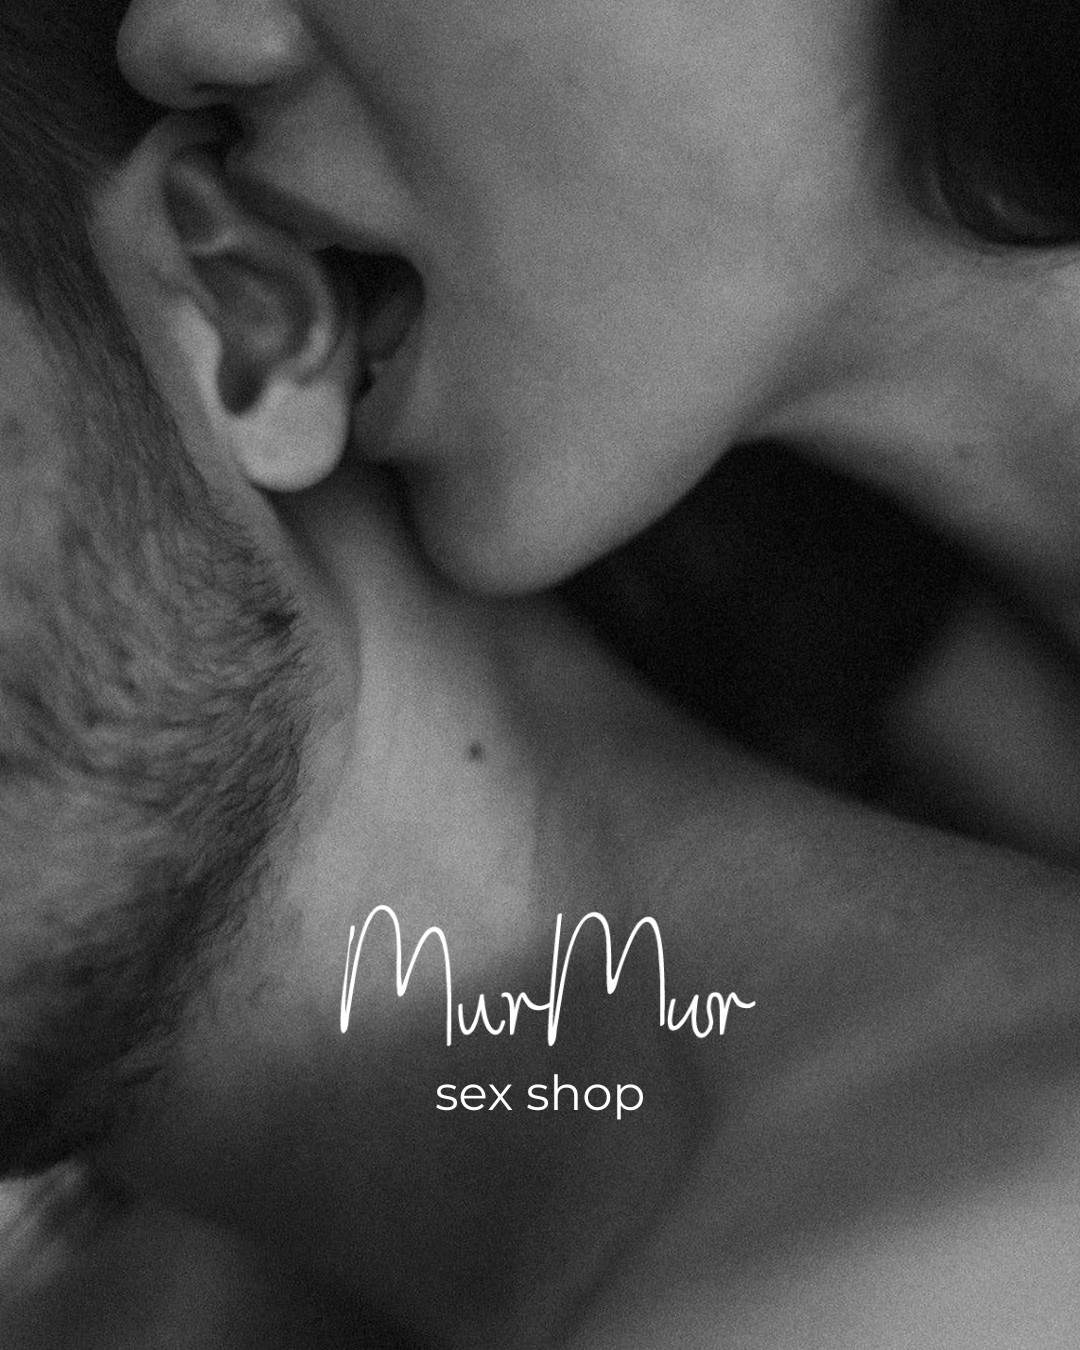 У форматі MurMurUa: відкритість та інновації у сексуальності